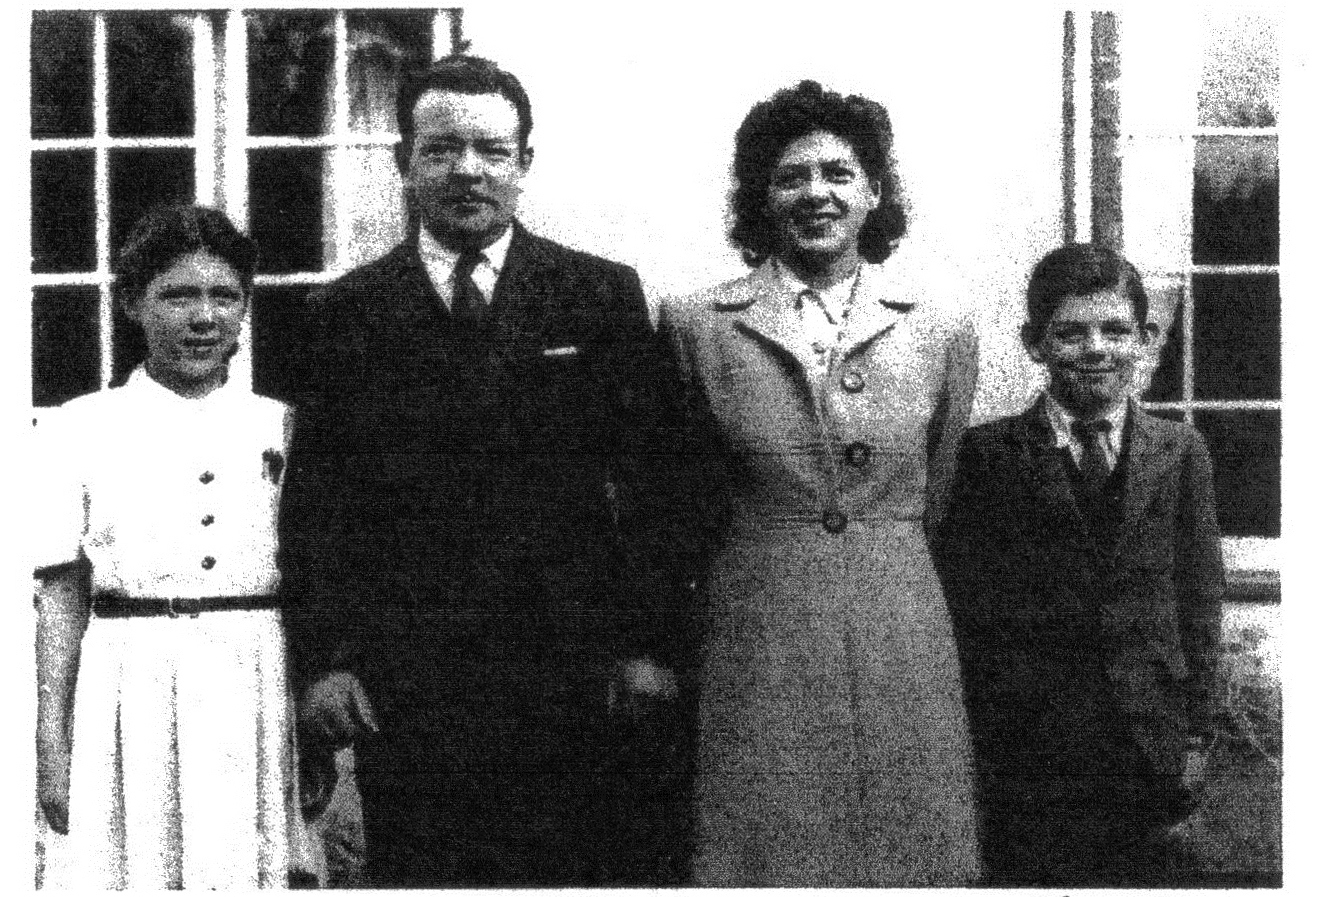 Thomas family, Wenallt Road, Rhiwbina